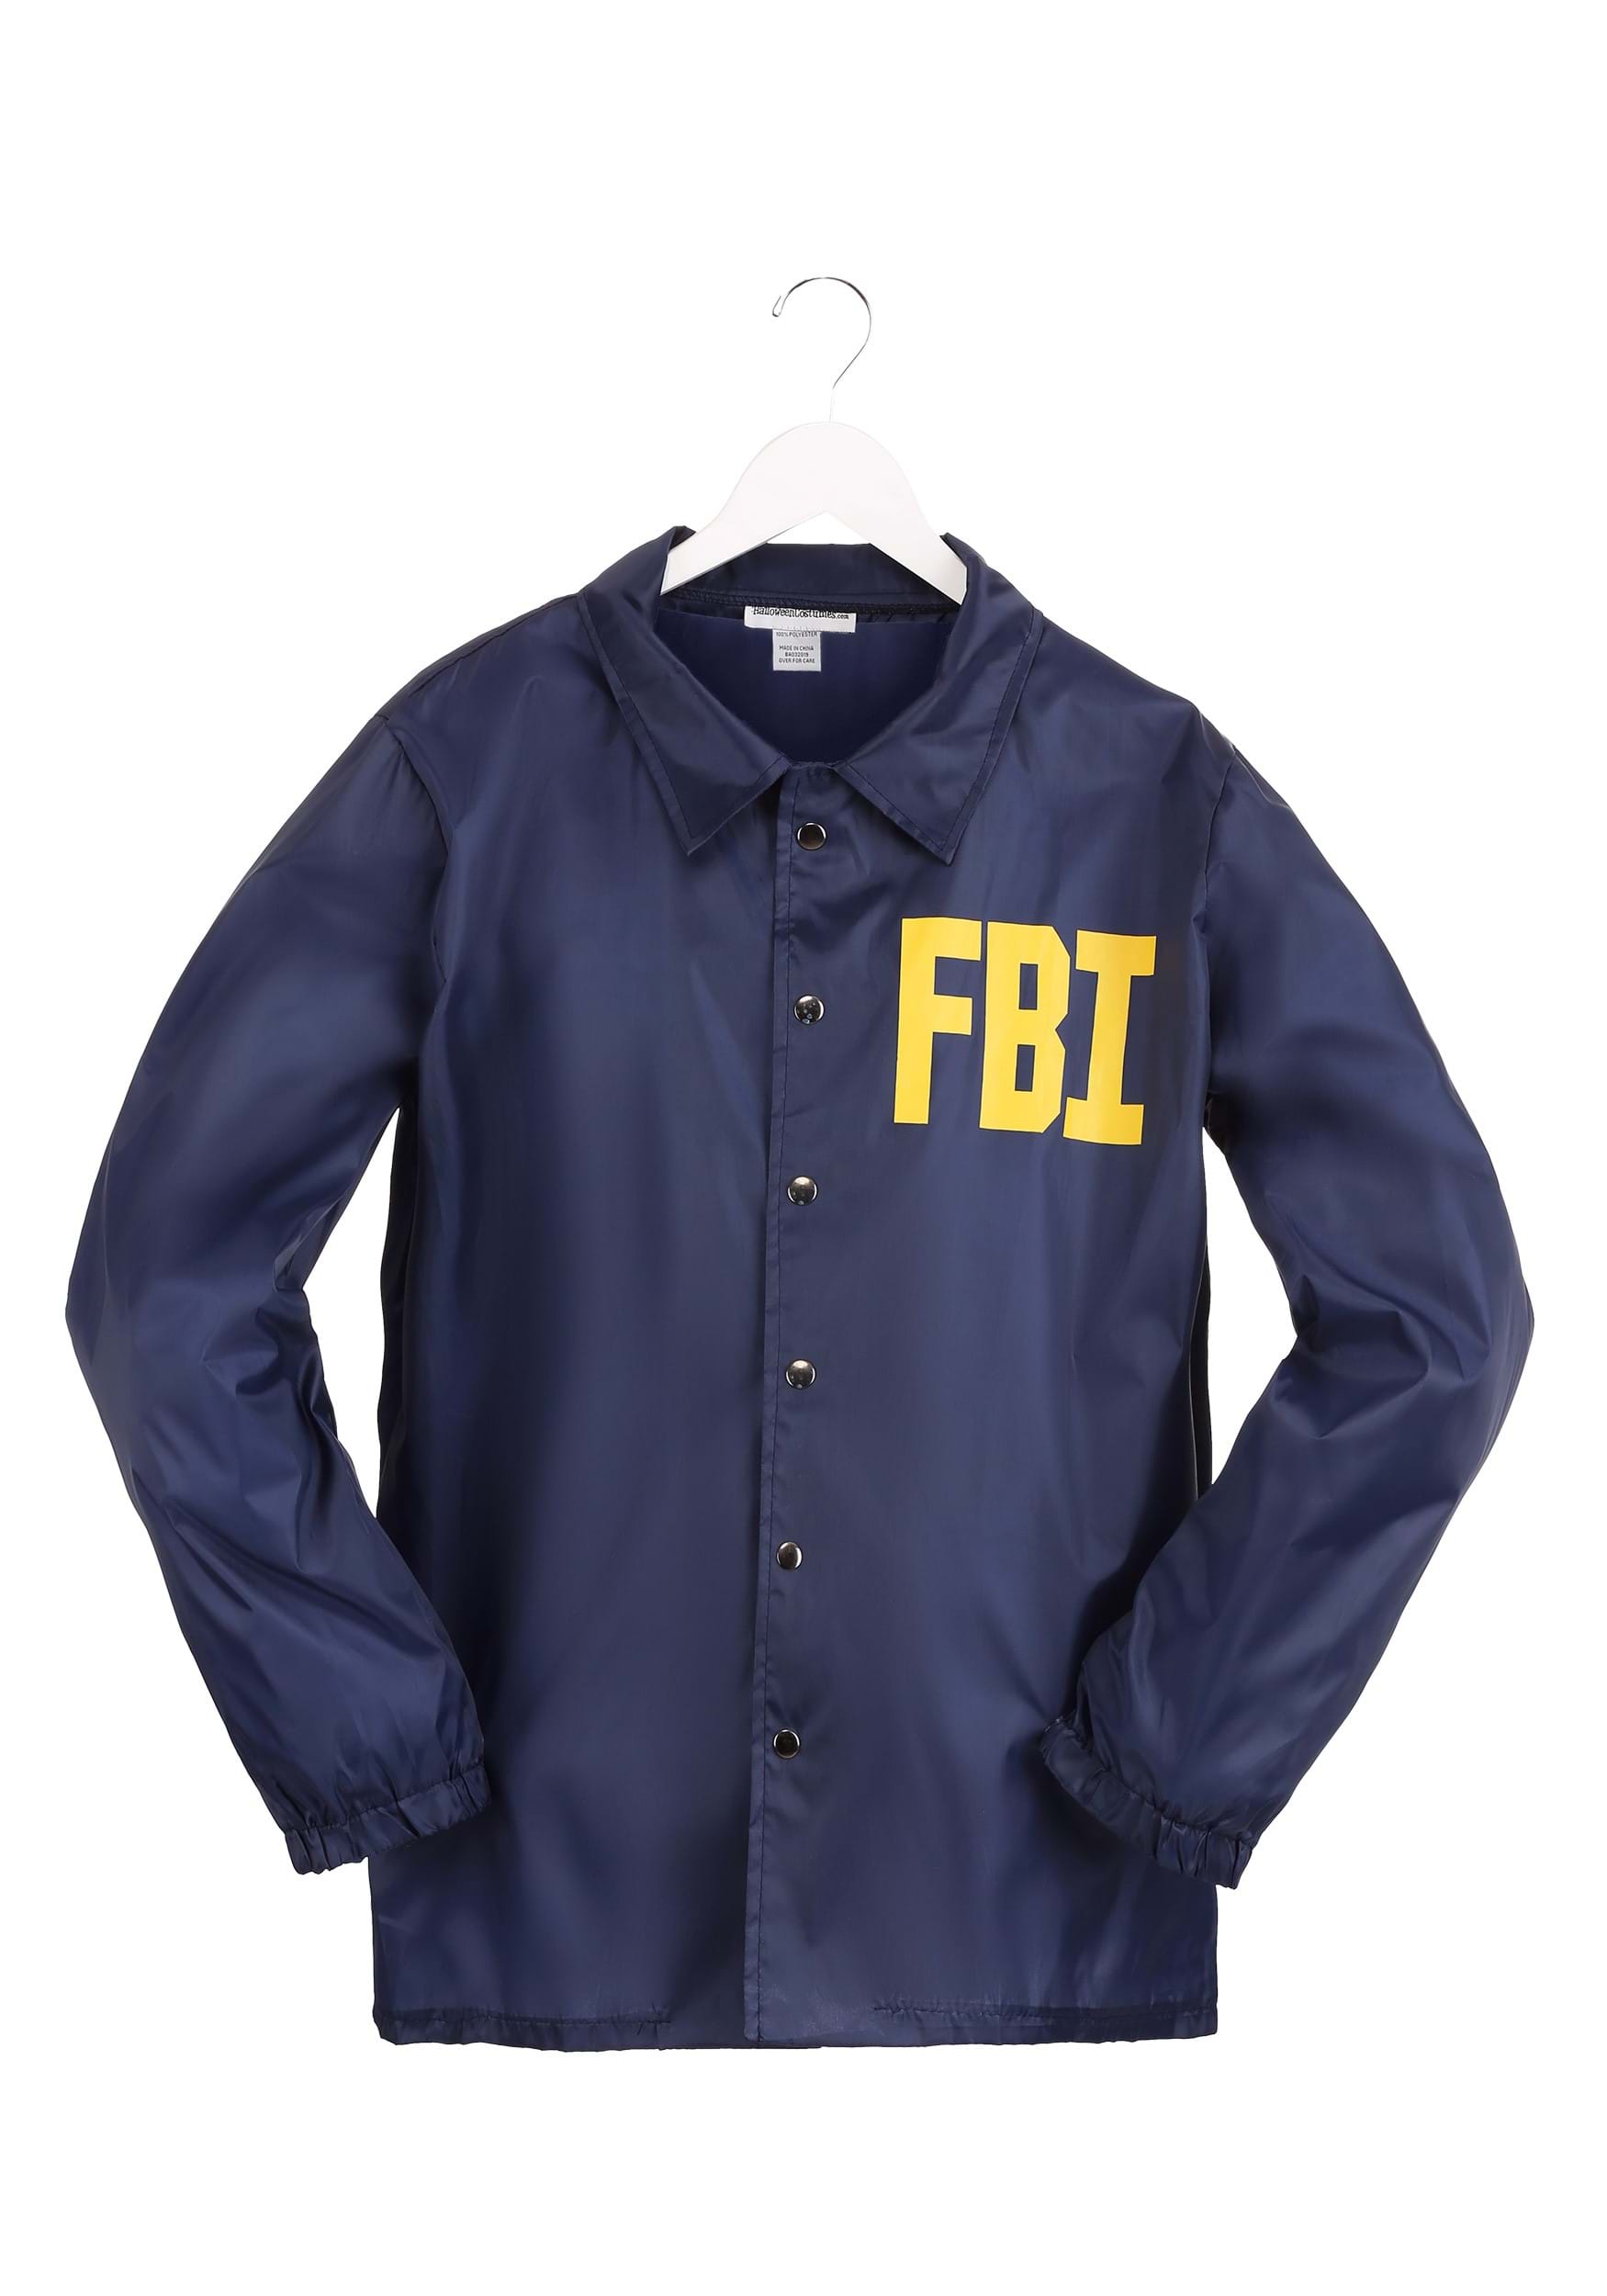 FBI Fancy Dress Costume For Men